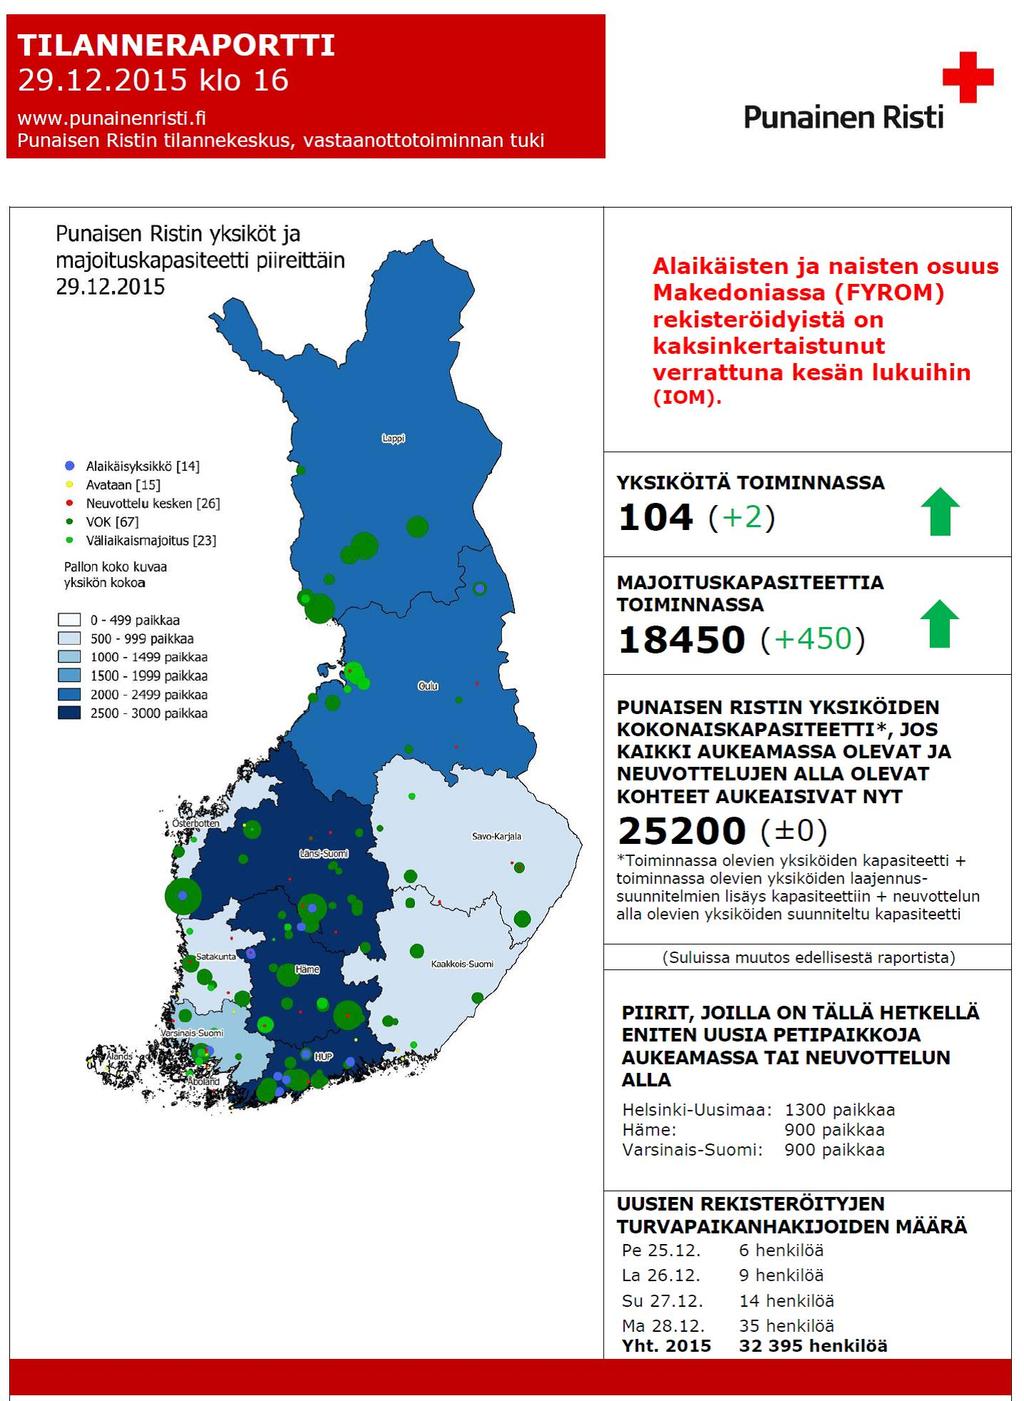 Finlands Röda Kors har upprätthållit en egen situationscentral i Helsingfors för att kontinuerligt följa med